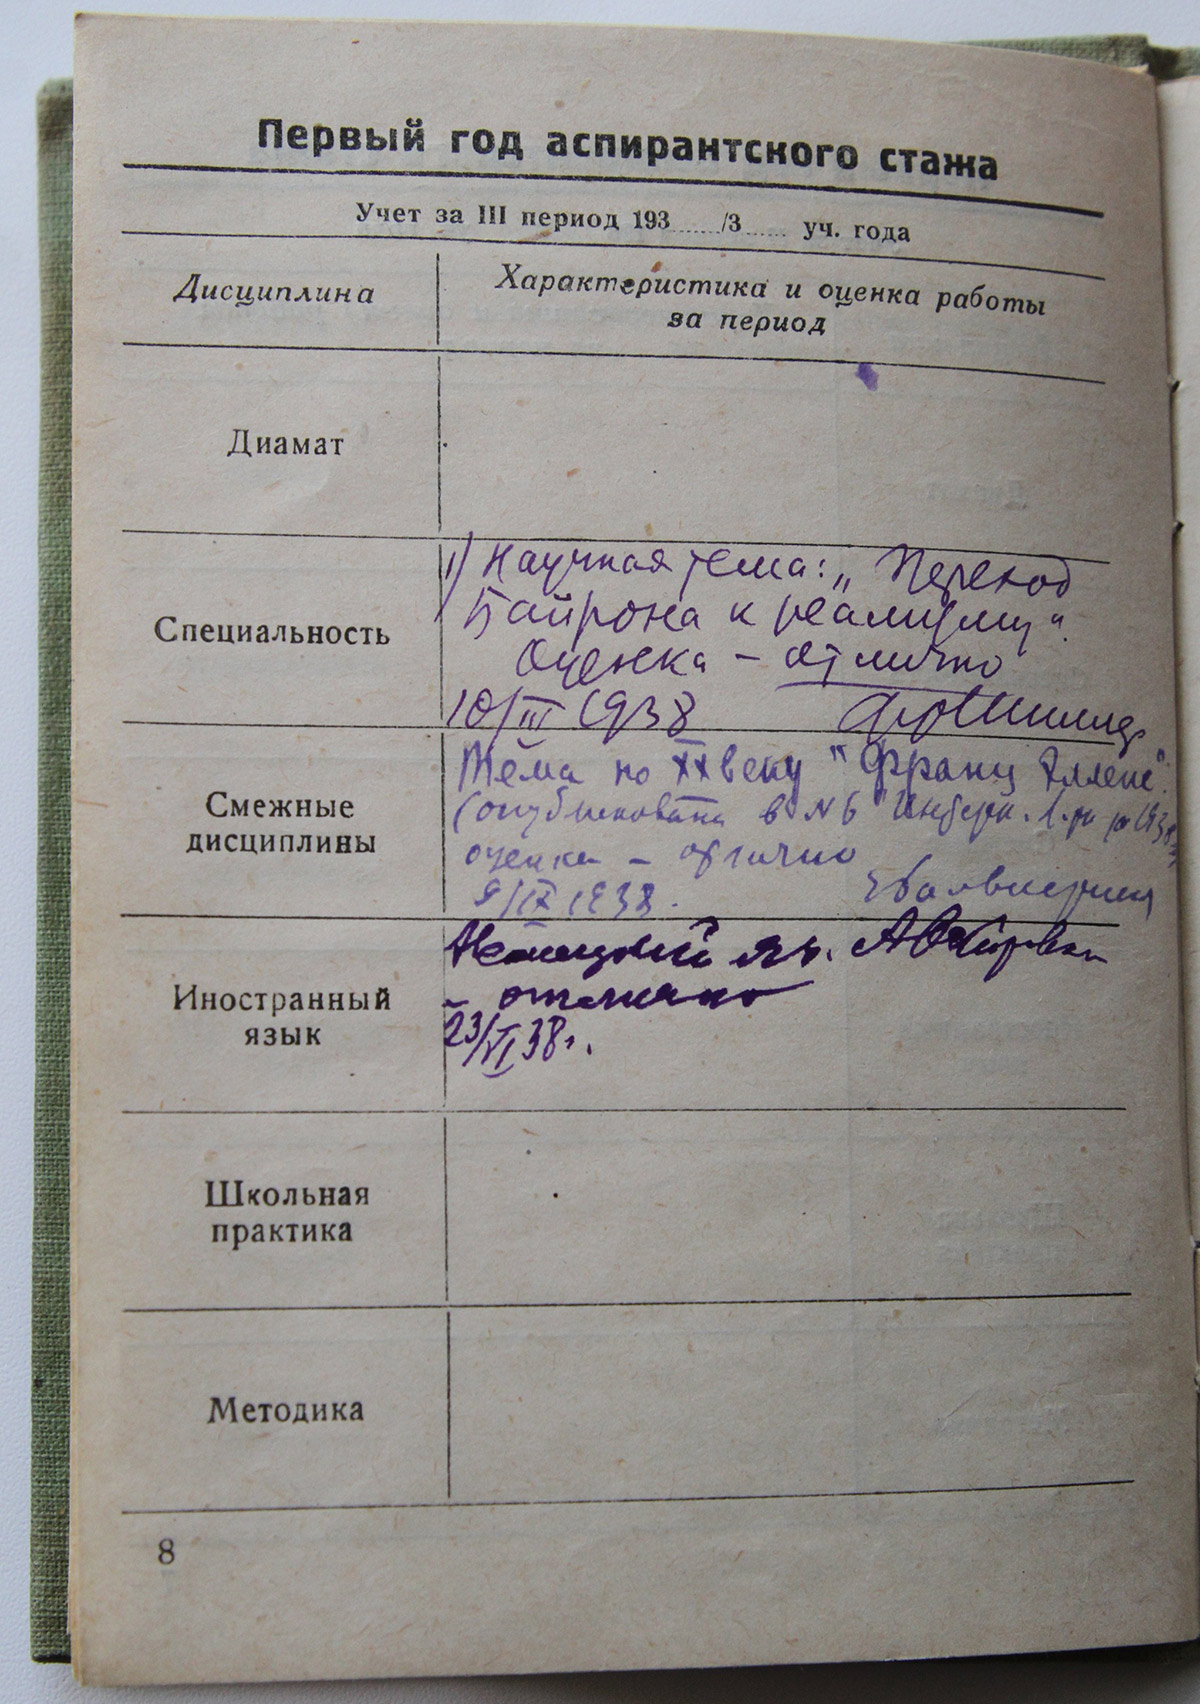 Учётный журнал аспиранта. 1938-1939 гг.